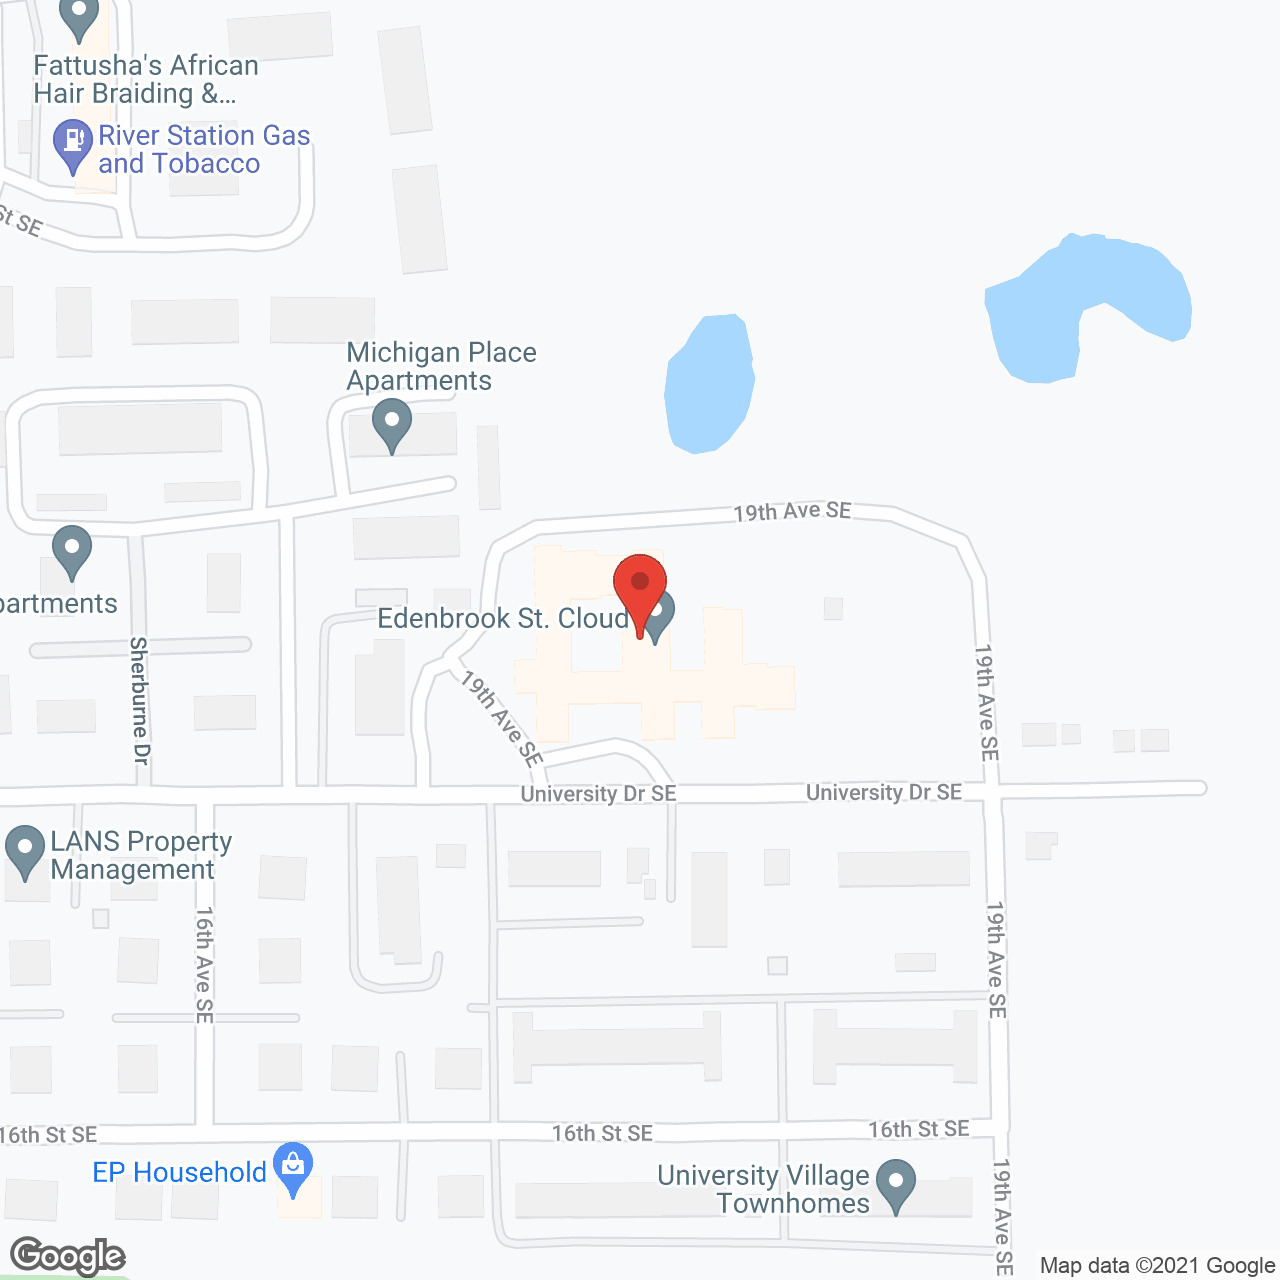 Edenbrook St. Cloud in google map